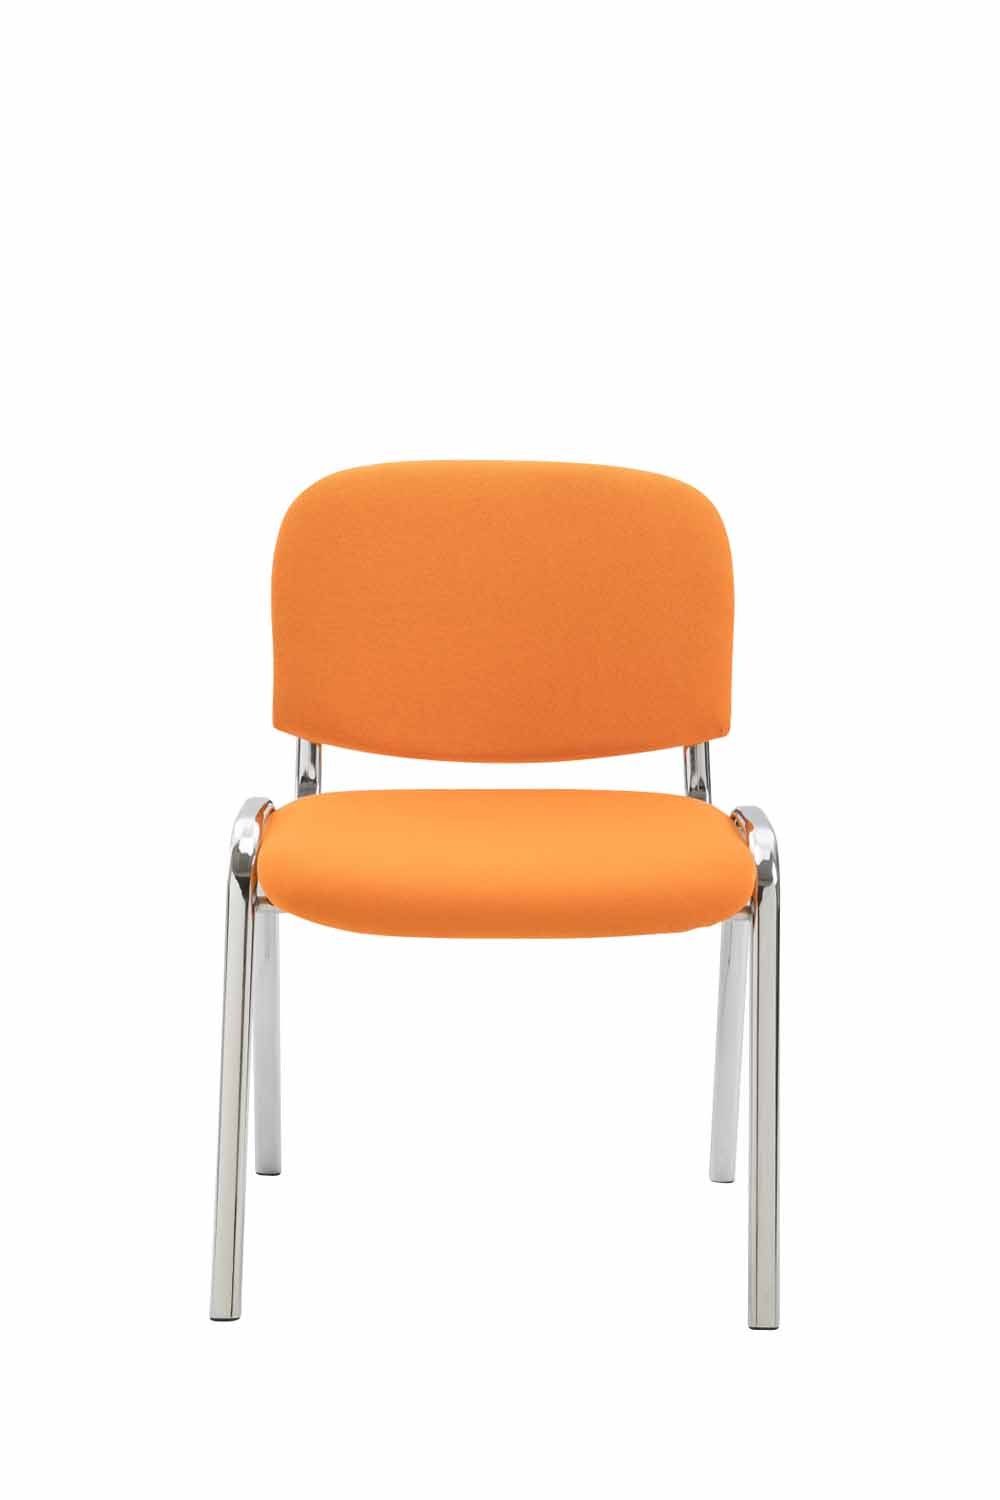 (Besprechungsstuhl Messestuhl), orange chrom Keen mit - Stoff hochwertiger TPFLiving Warteraumstuhl Sitzfläche: Konferenzstuhl - Gestell: Besucherstuhl - Polsterung Metall -